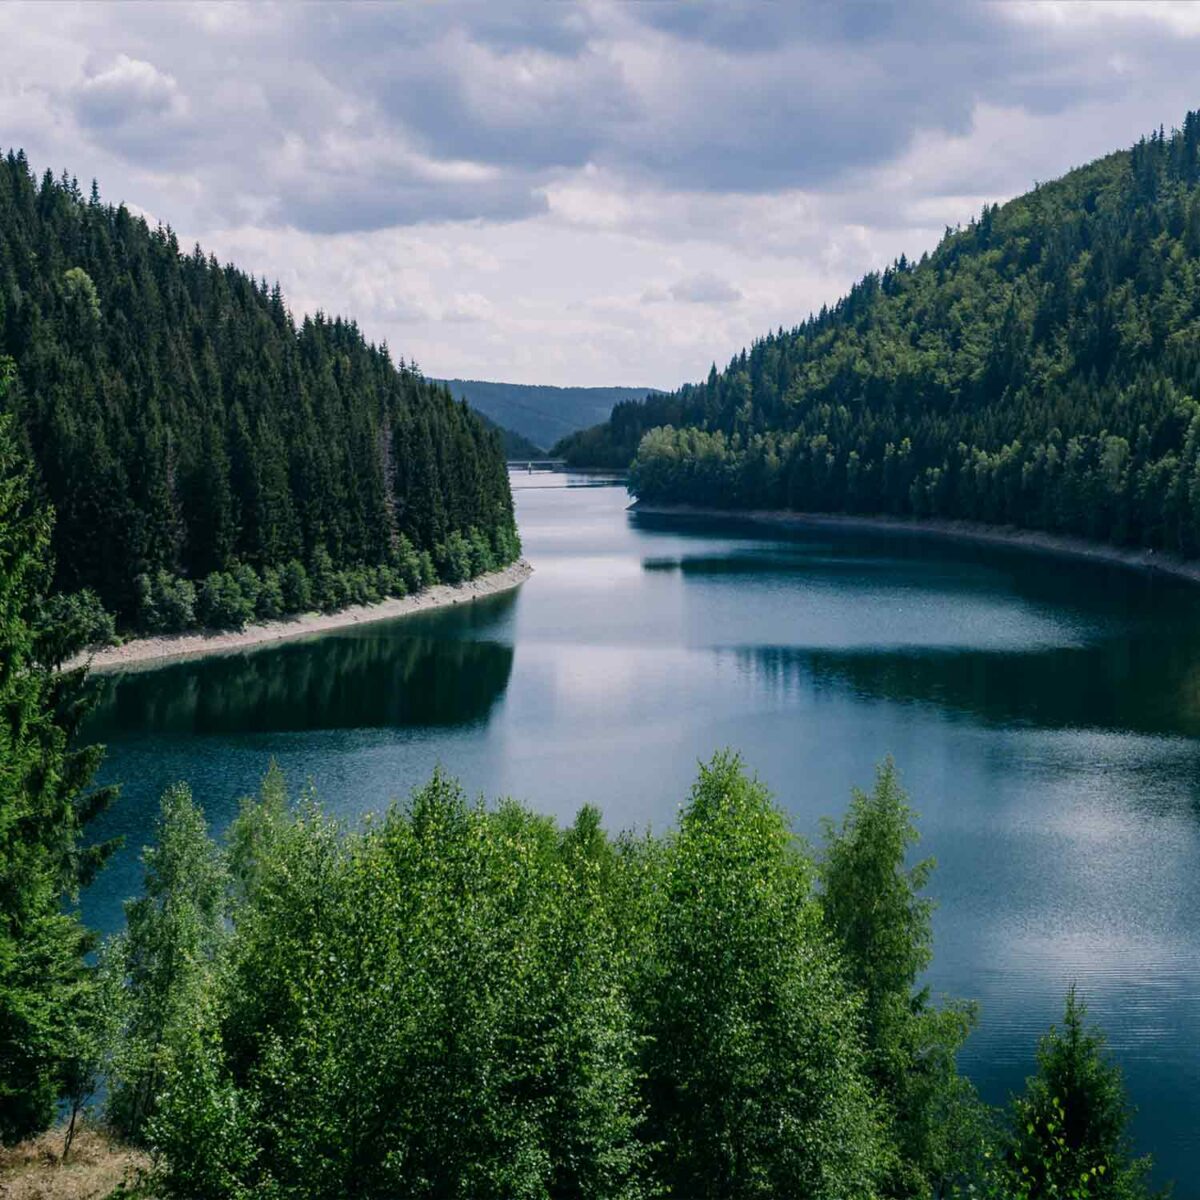 טפט של אגם מתפתל עם יער משני צדדיו